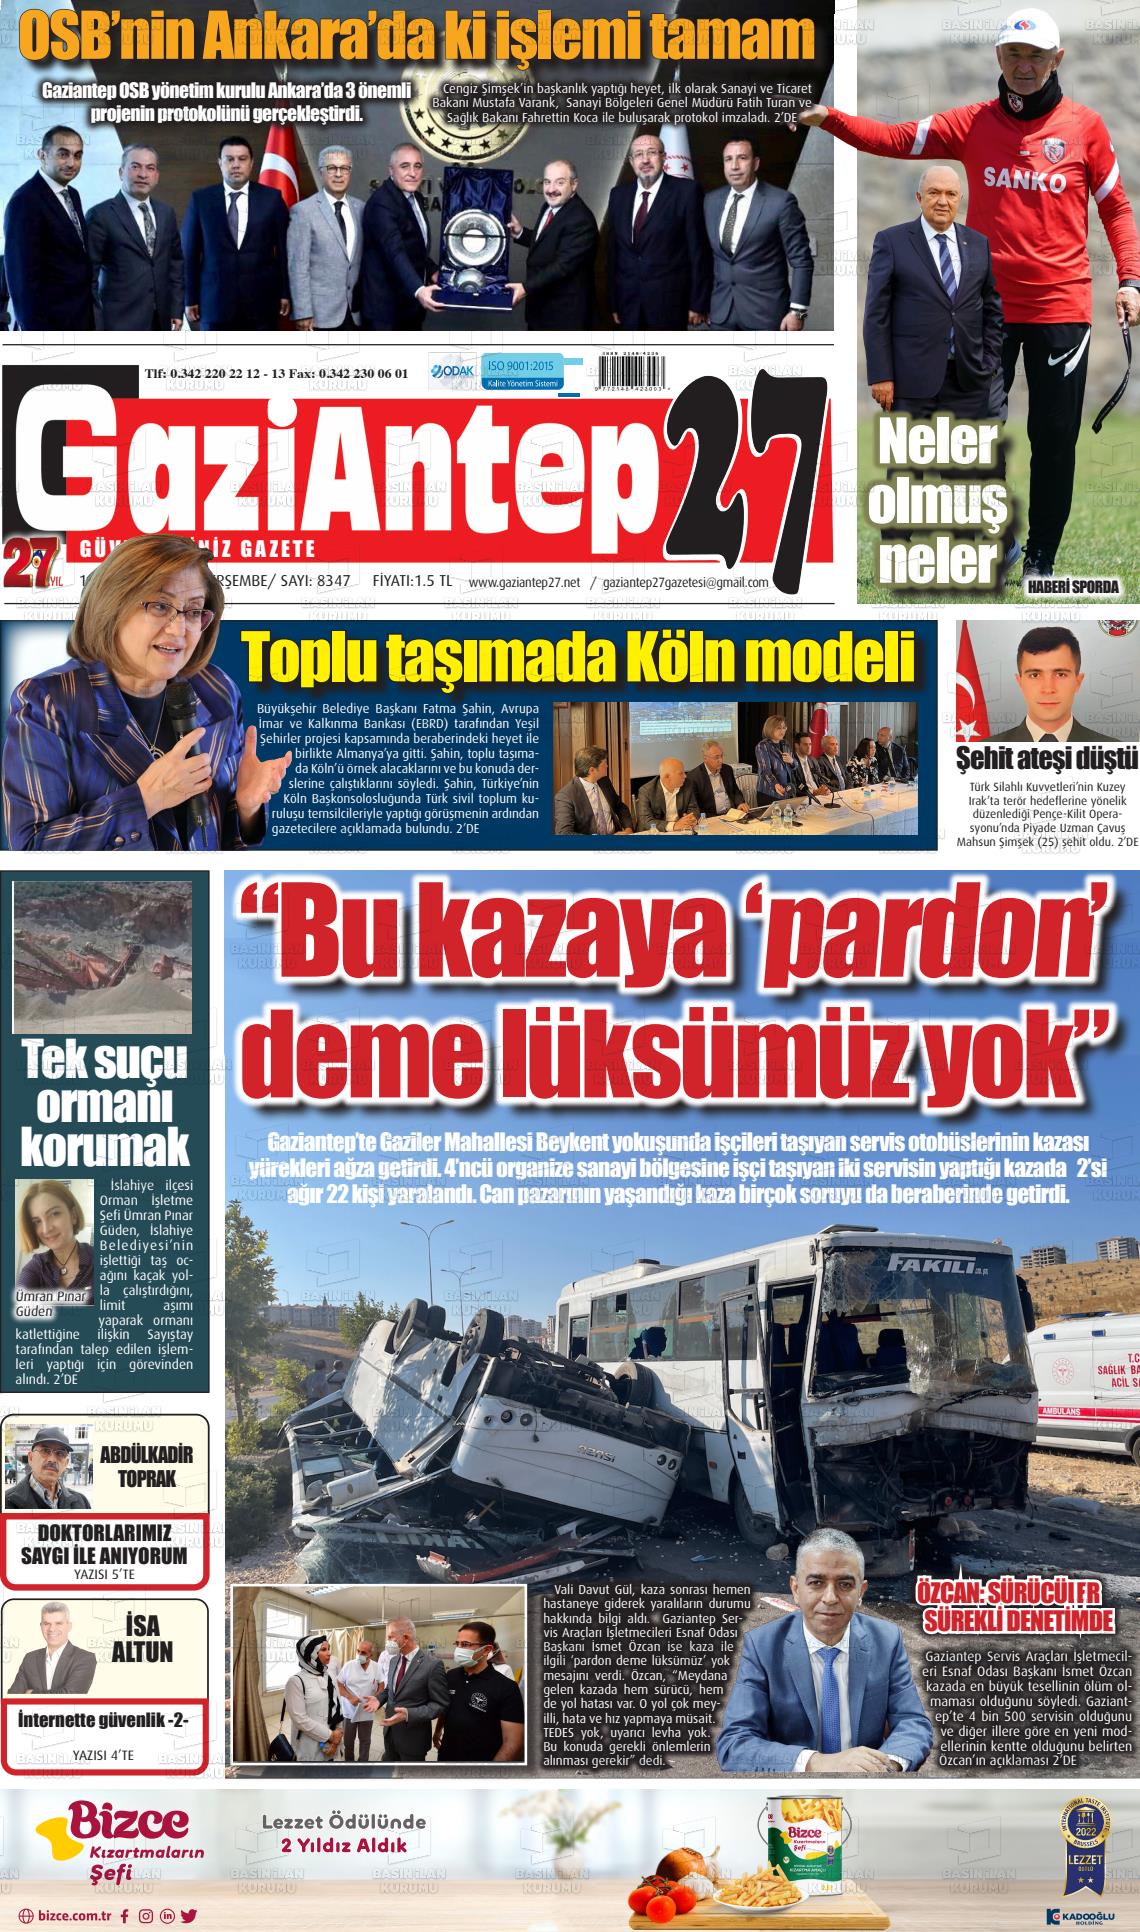 11 Ağustos 2022 Gaziantep 27 Gazete Manşeti